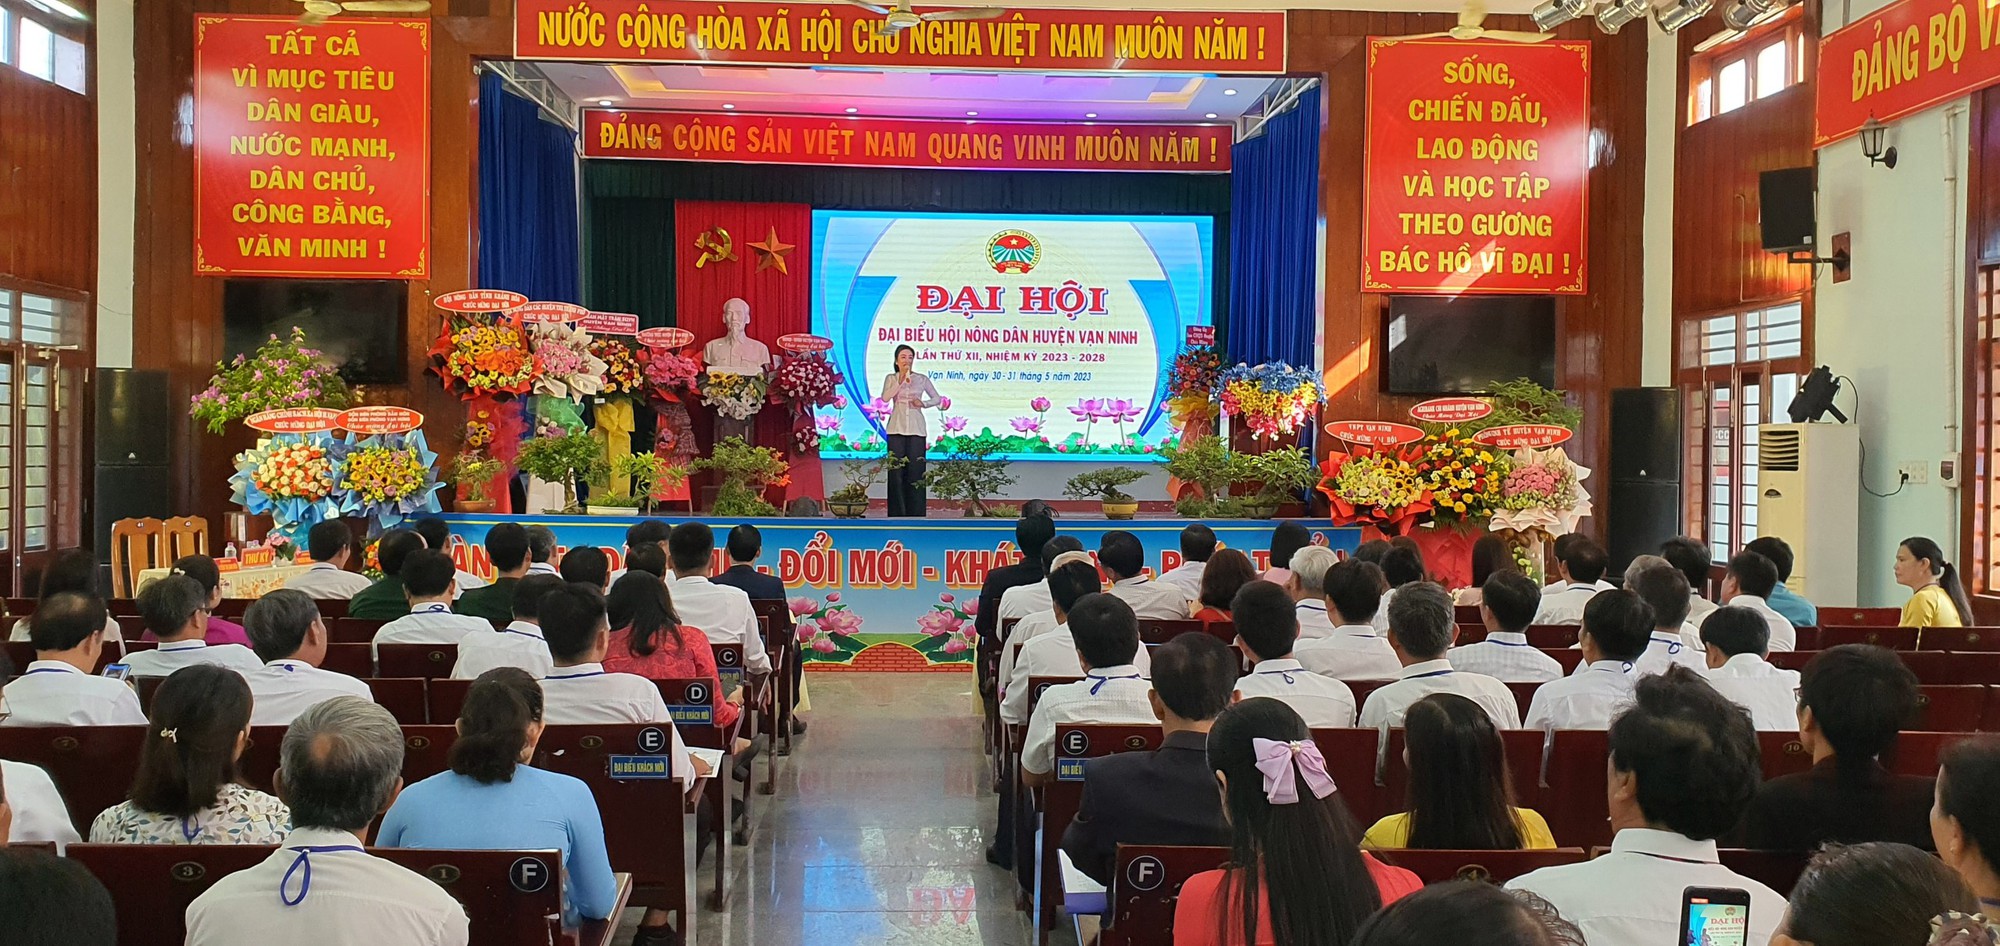 Khánh Hòa: Đại hội Hội Nông dân huyện Vạn Ninh, ông Võ Ngọc Thanh Sơn được bầu giữ chức Chủ tịch - Ảnh 3.